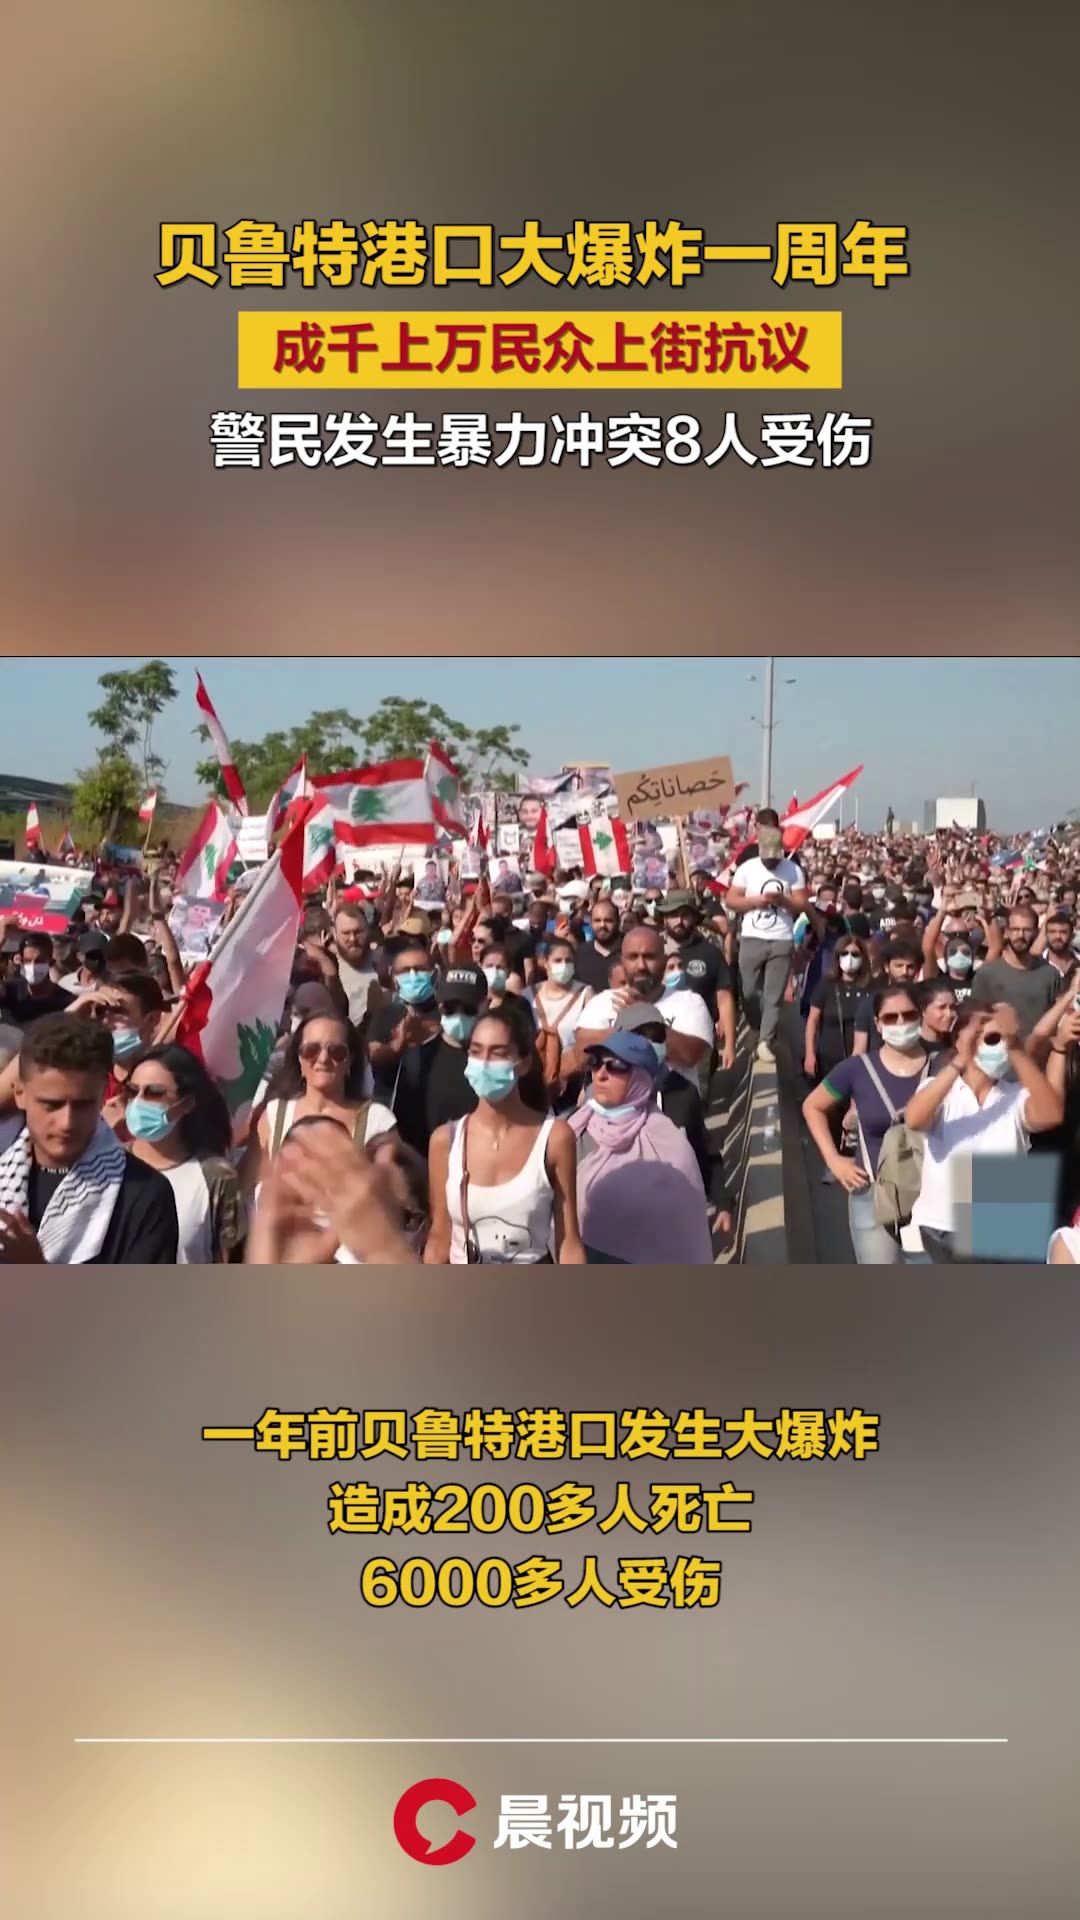 美大学邀请黄之锋罗冠聪座谈 中国留学生场内外抗议：“港独”死路！